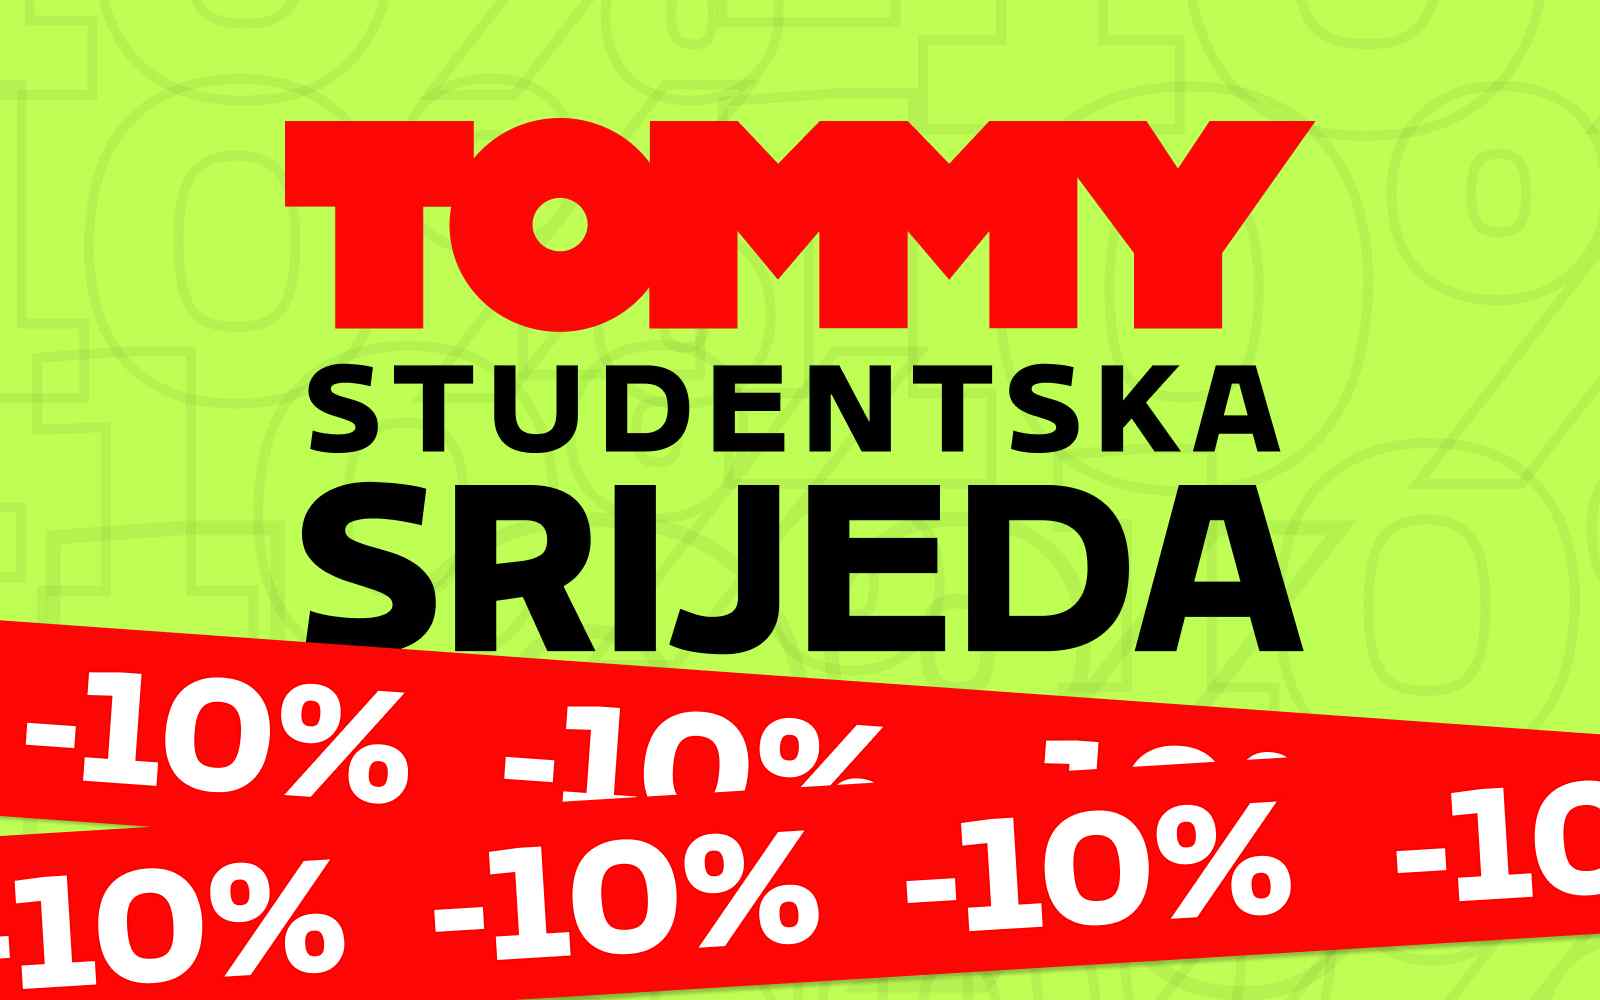 Tommy banner - Student si? Iskoristi popust koji ti donosi Tommy studentska srijeda!